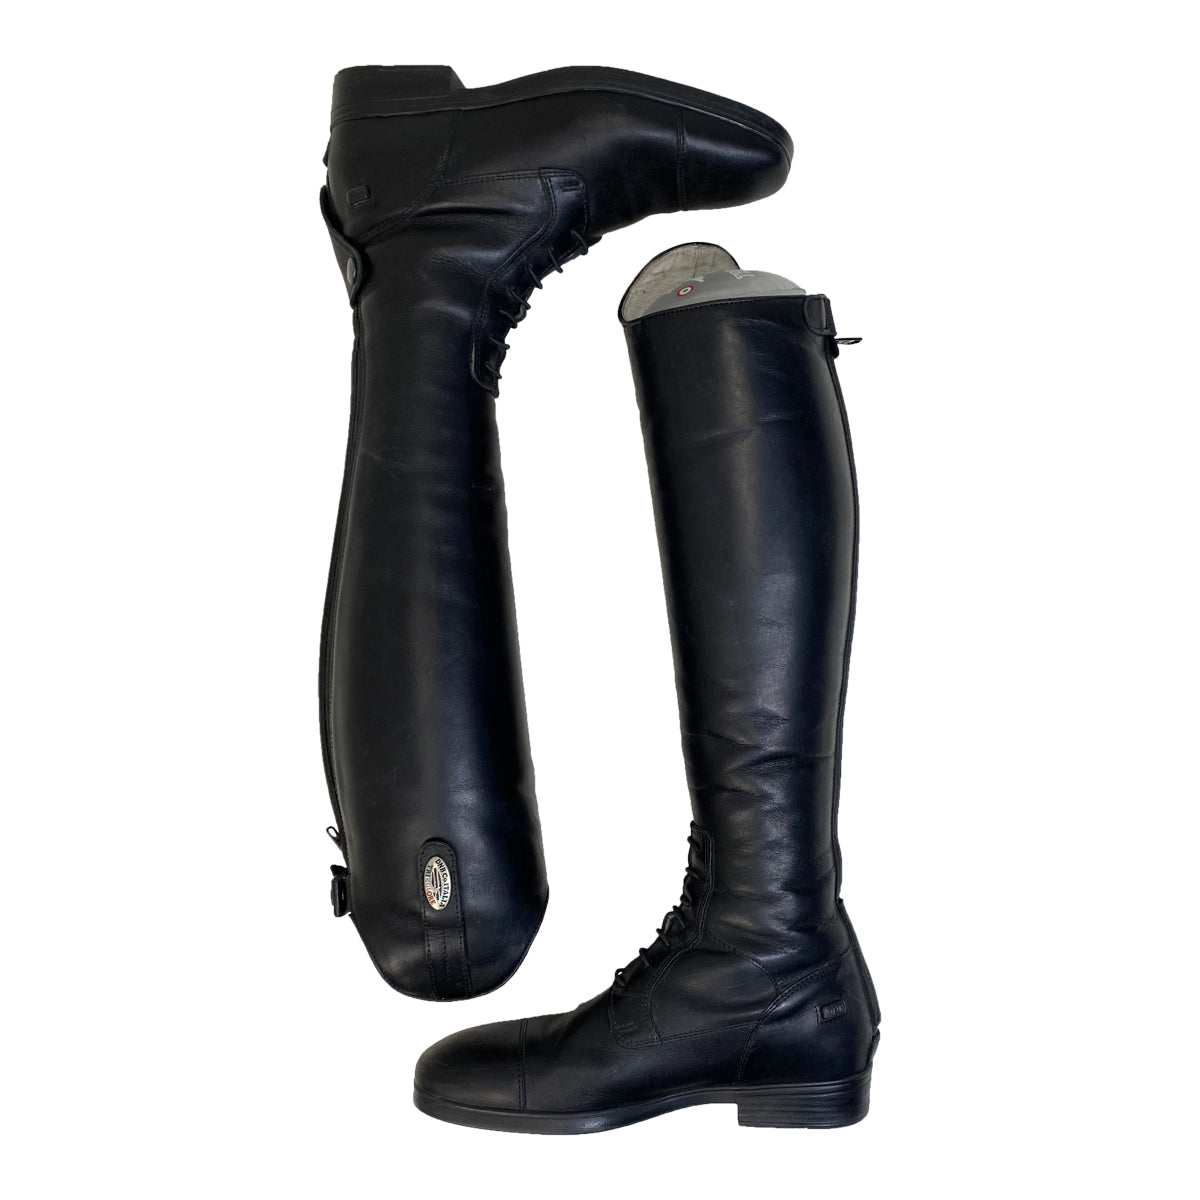 DeNiro Tricolore 'Amabile' Pro Field Boots in Black